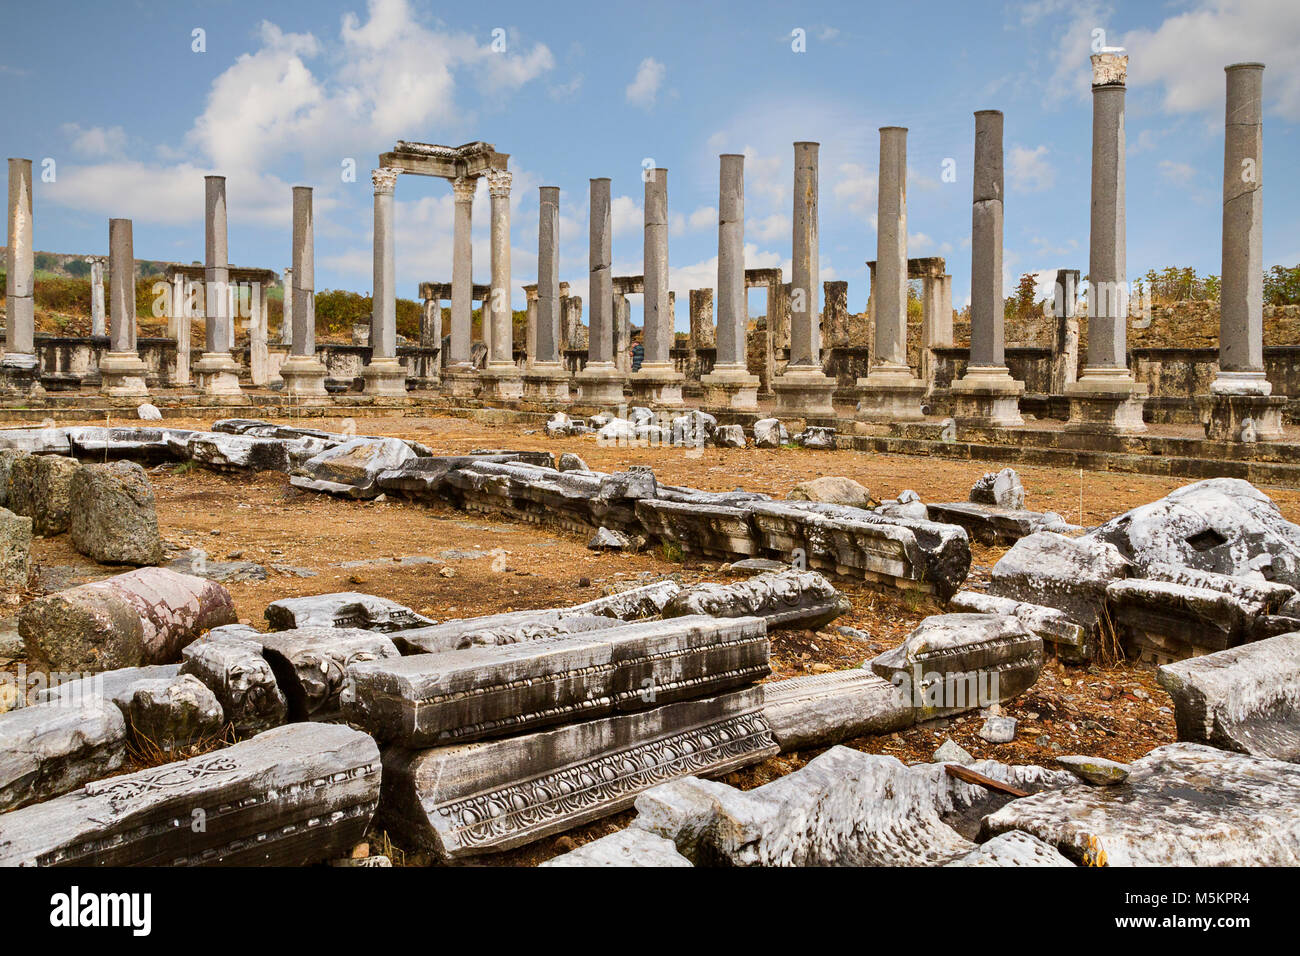 Les colonnes de l'Agora romaine dans les ruines de la ville antique de Pergé, Antalya, Turquie. Banque D'Images